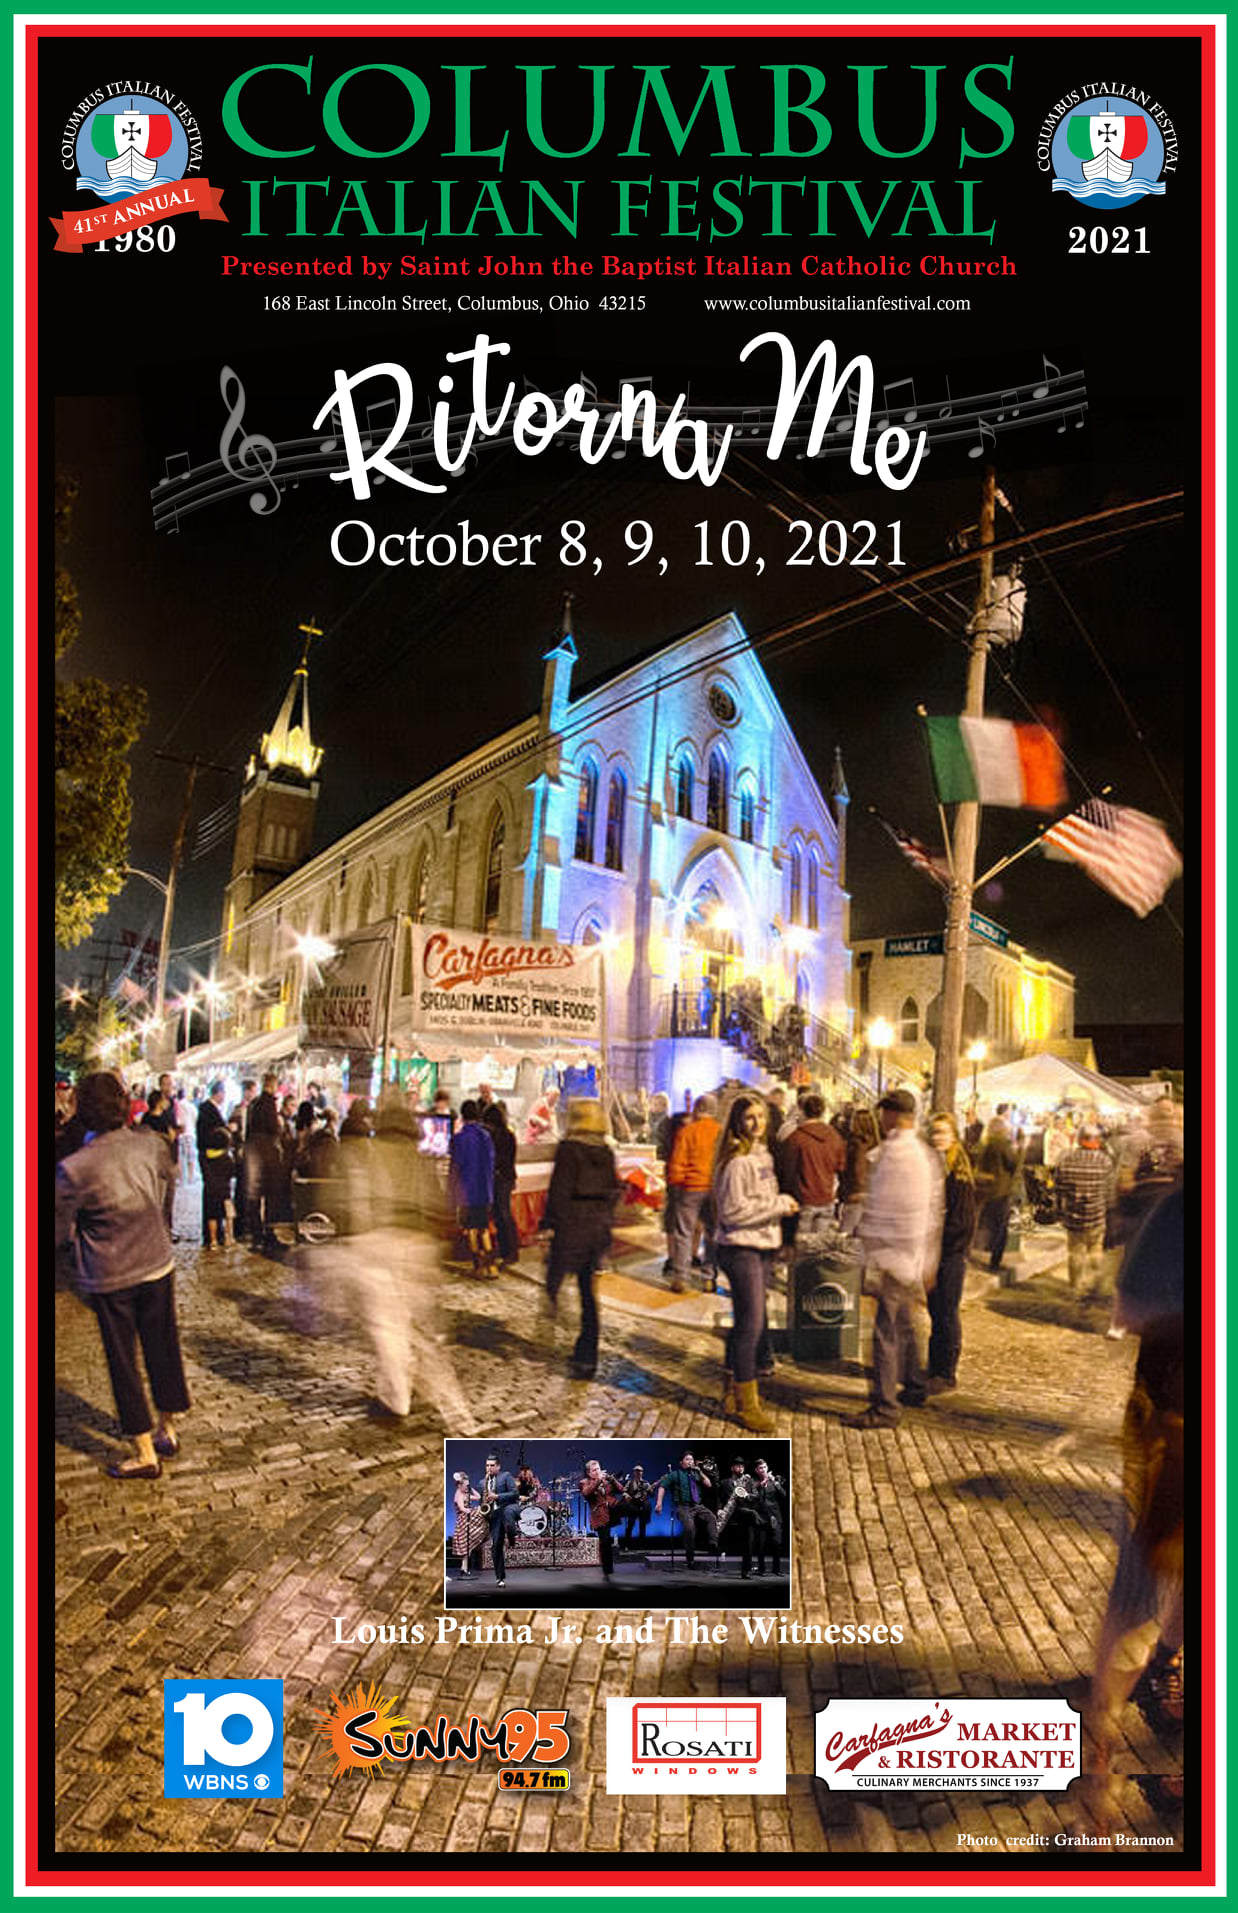 Festival Poster The Columbus Italian Festival